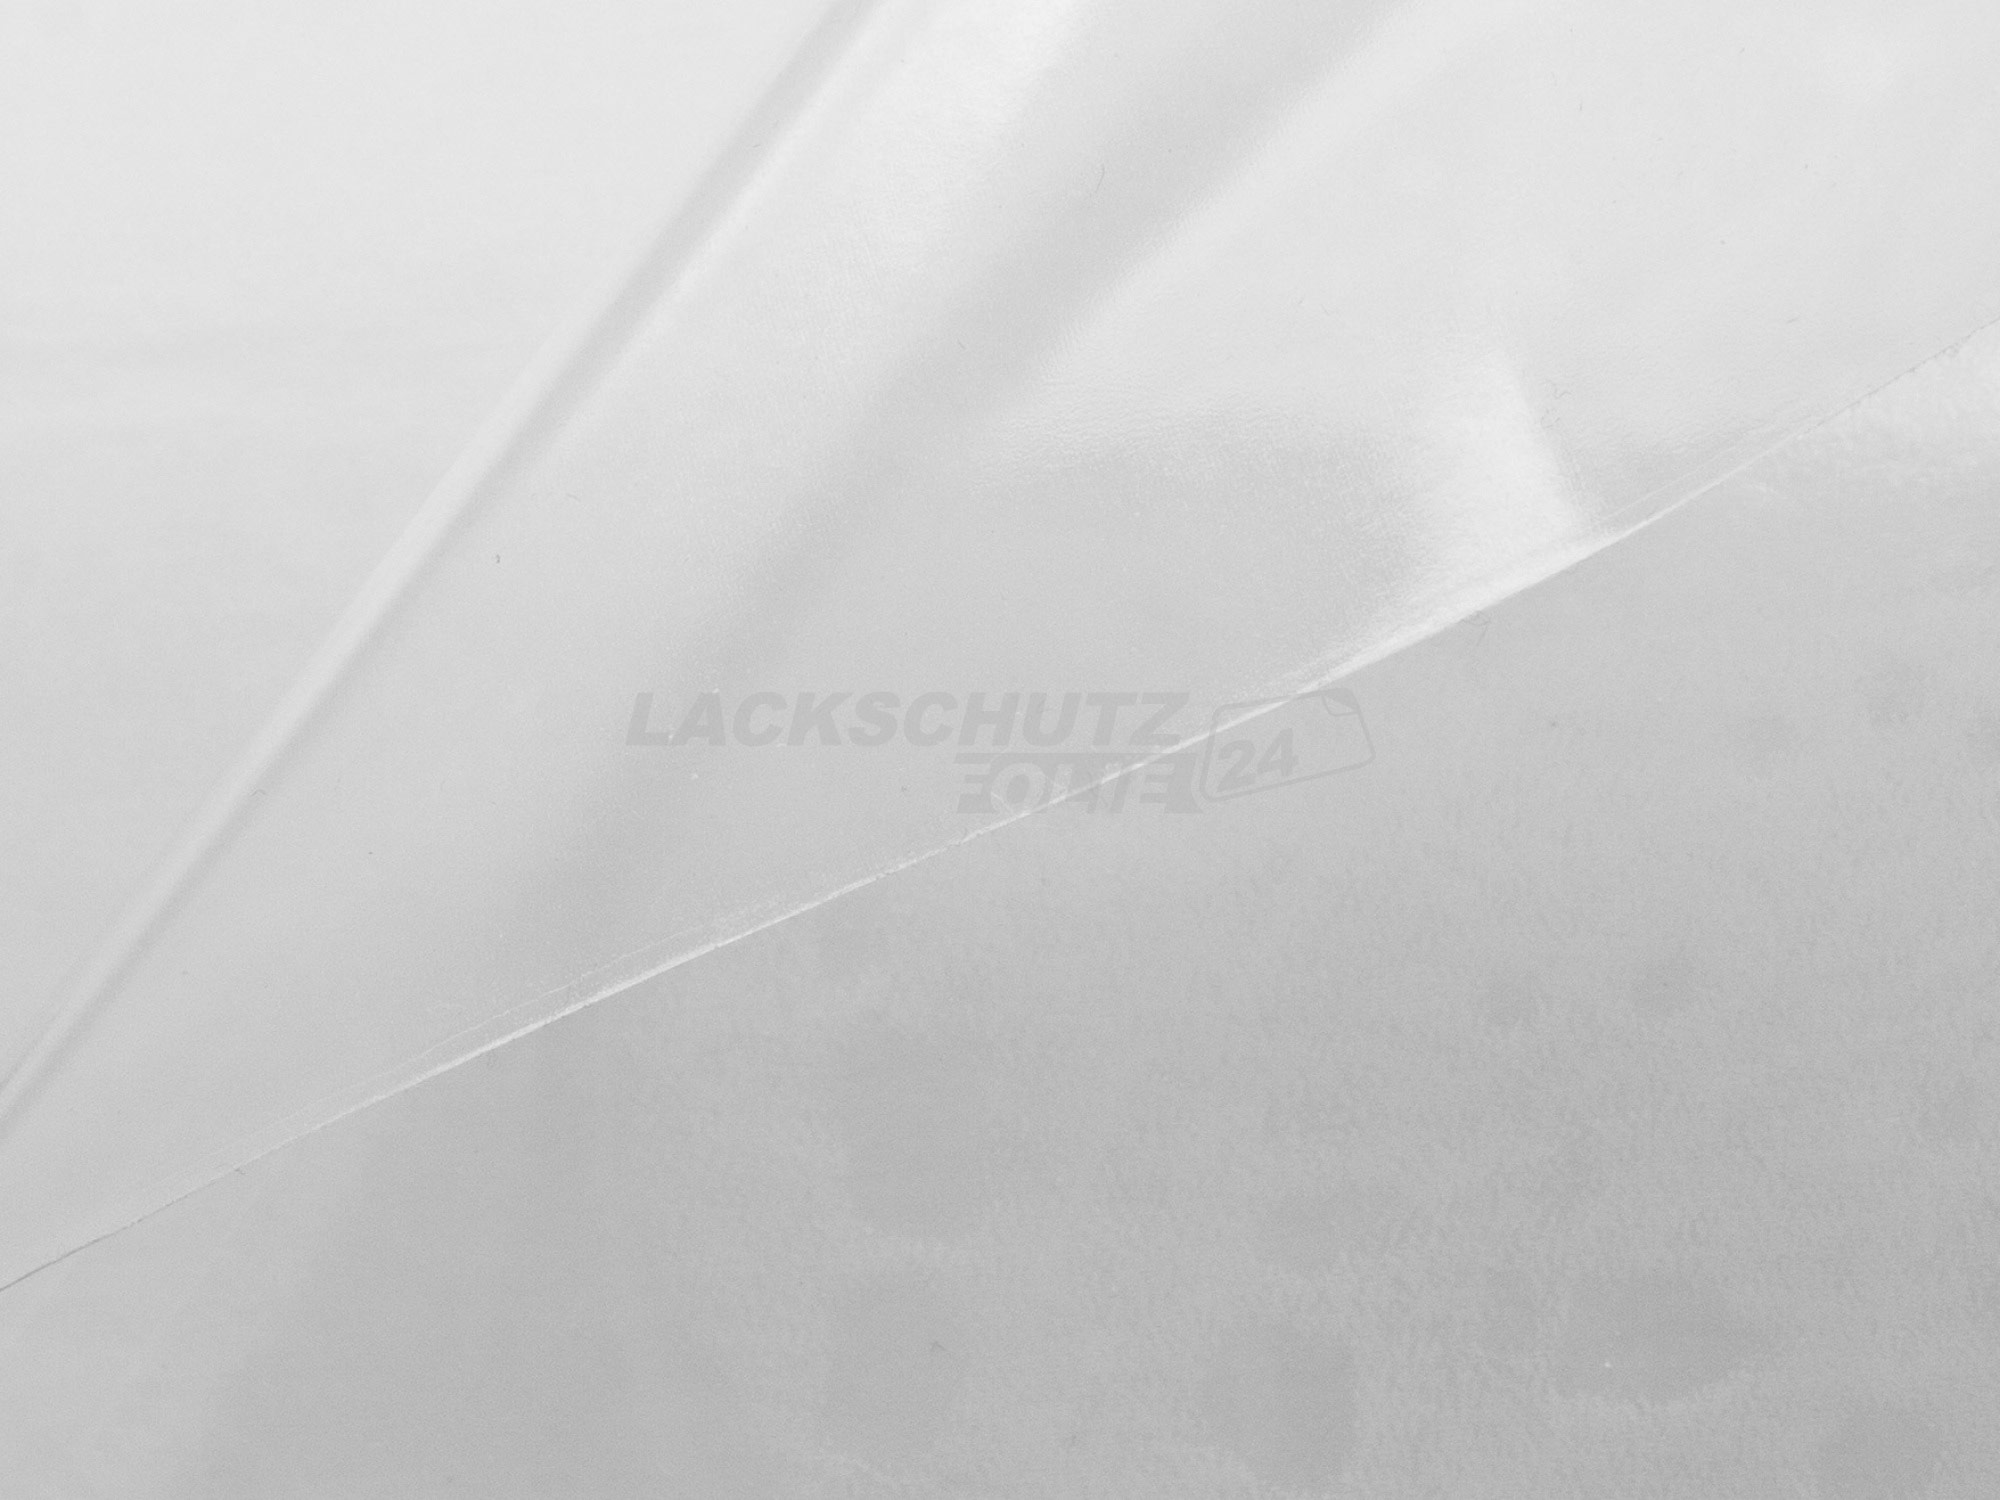 Ladekantenschutzfolie - Transparent Glatt Hochglänzend 240 µm stark für Audi A4 Avant (Kombi) B8, Typ 8K, Facelift, BJ 11/2011-2015